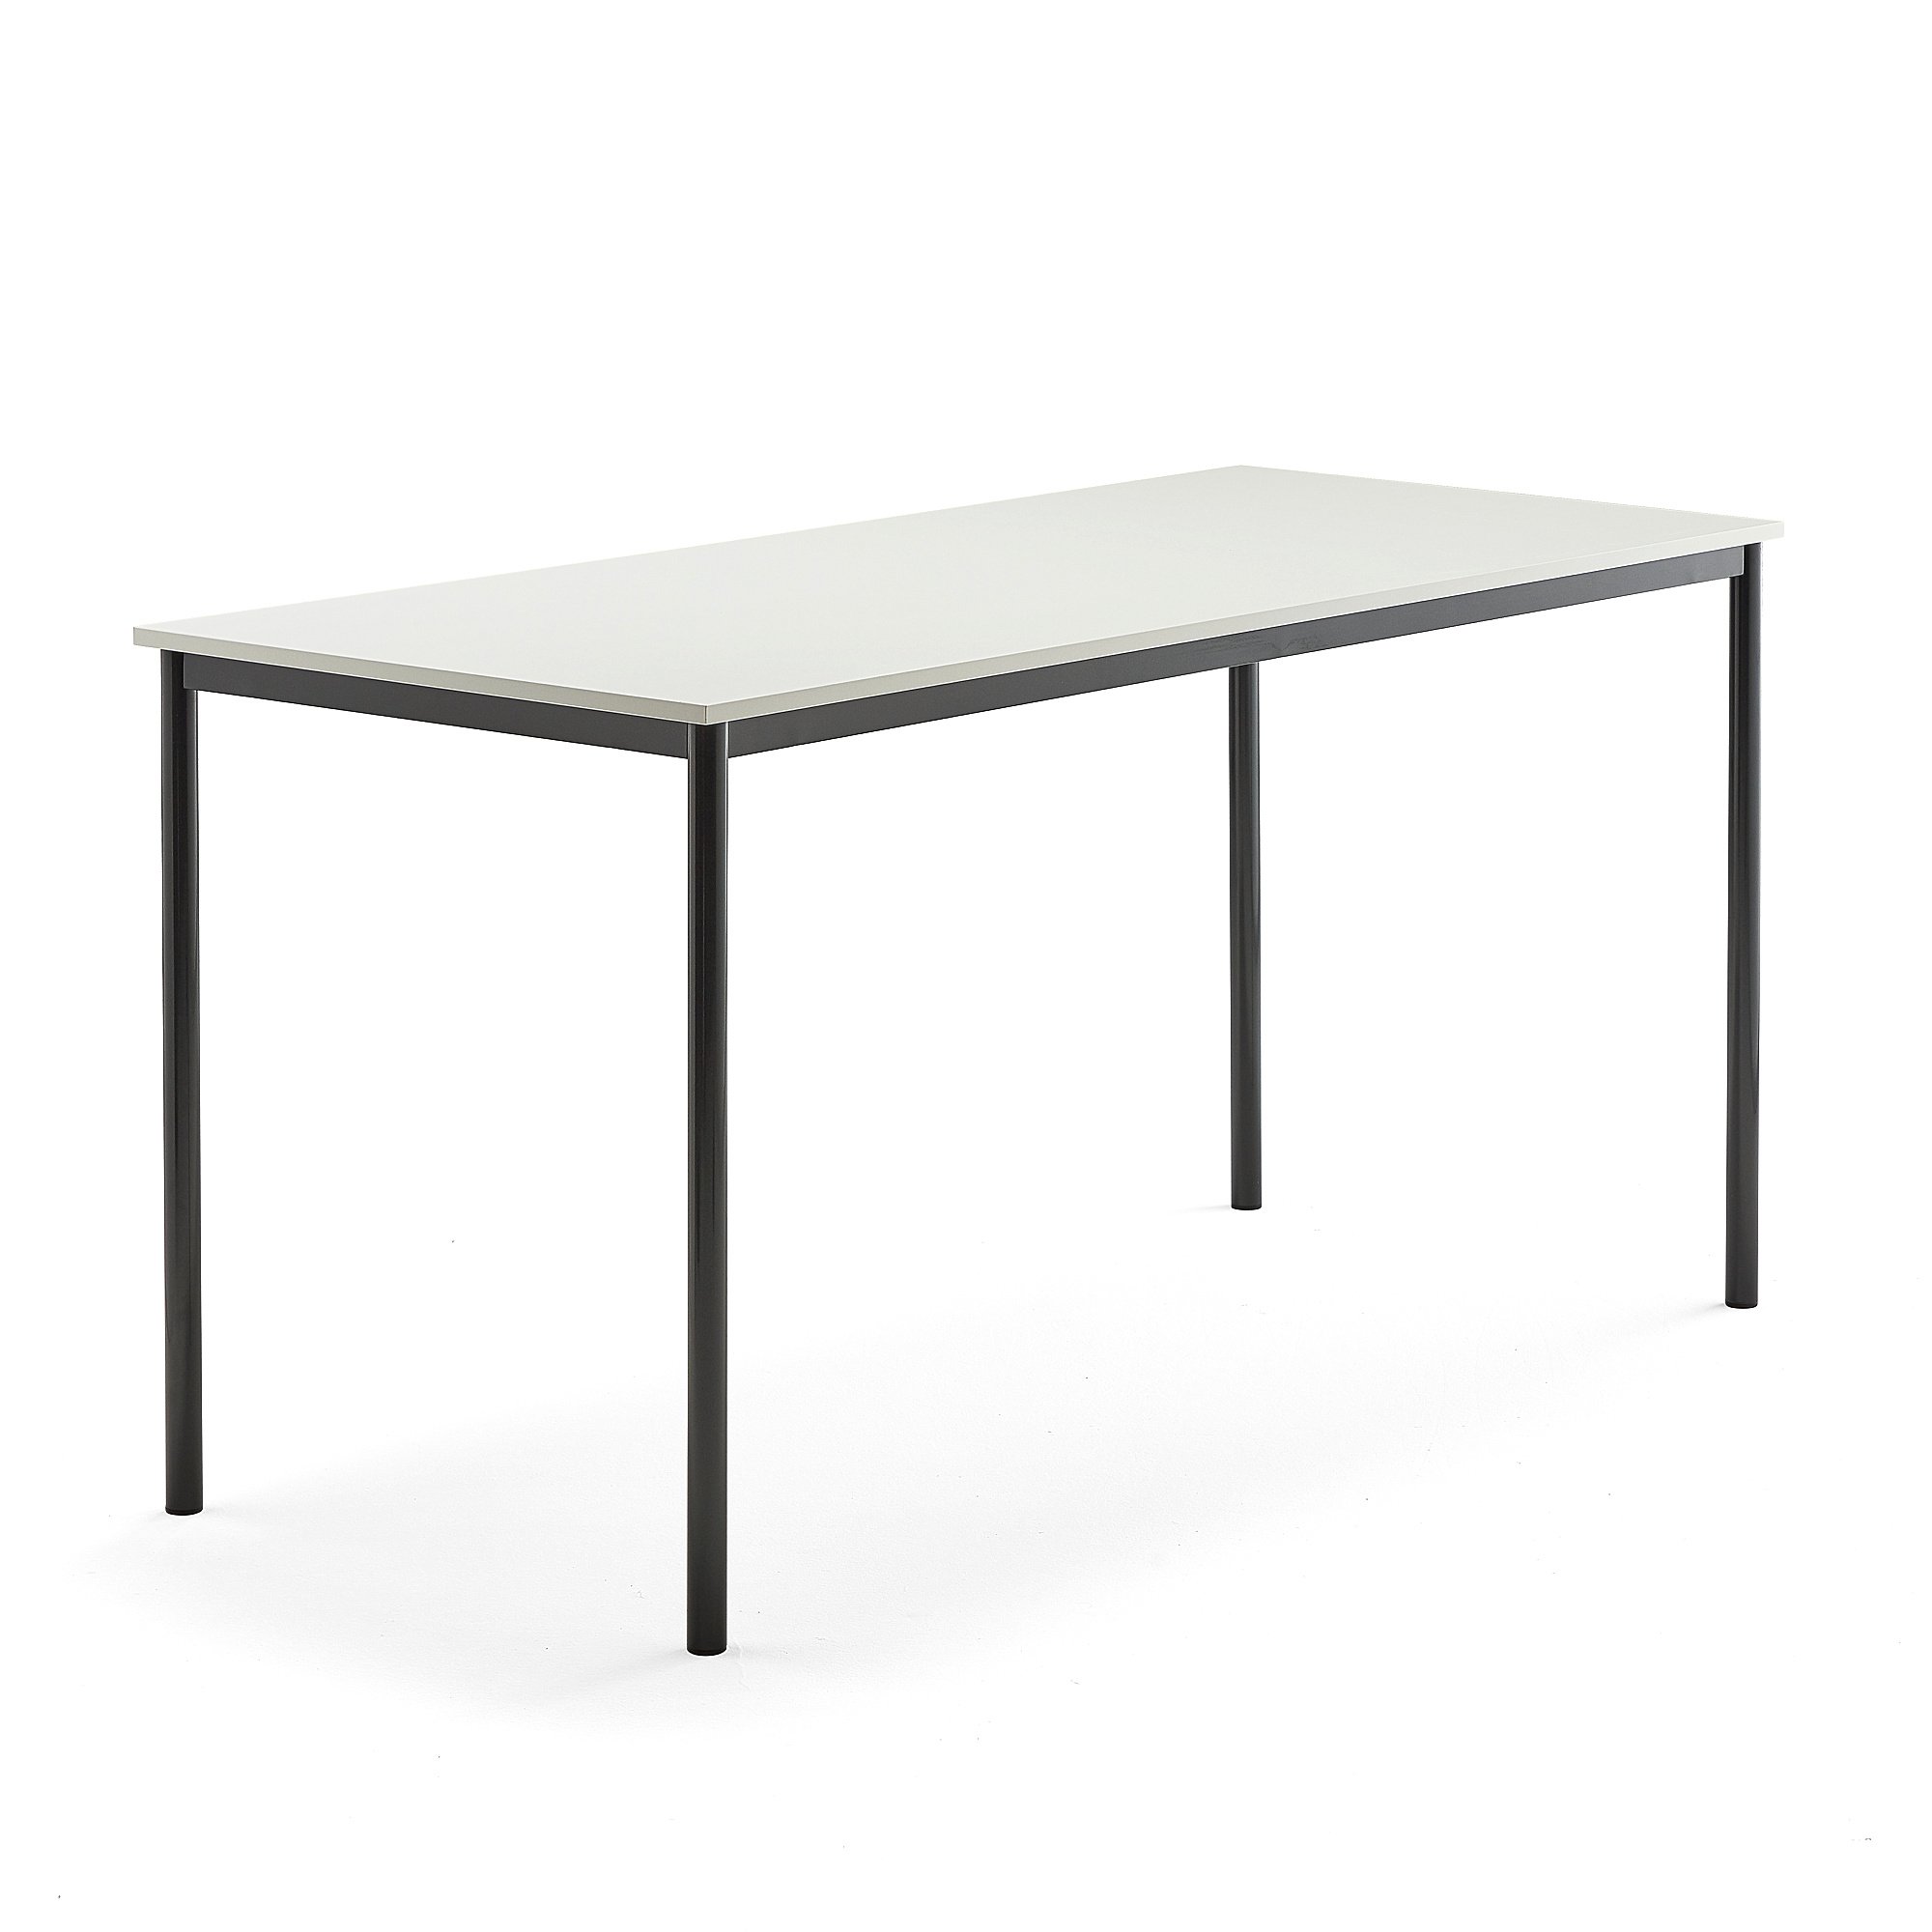 Stůl SONITUS, 1800x800x900 mm, antracitově šedé nohy, HPL deska tlumící hluk, bílá